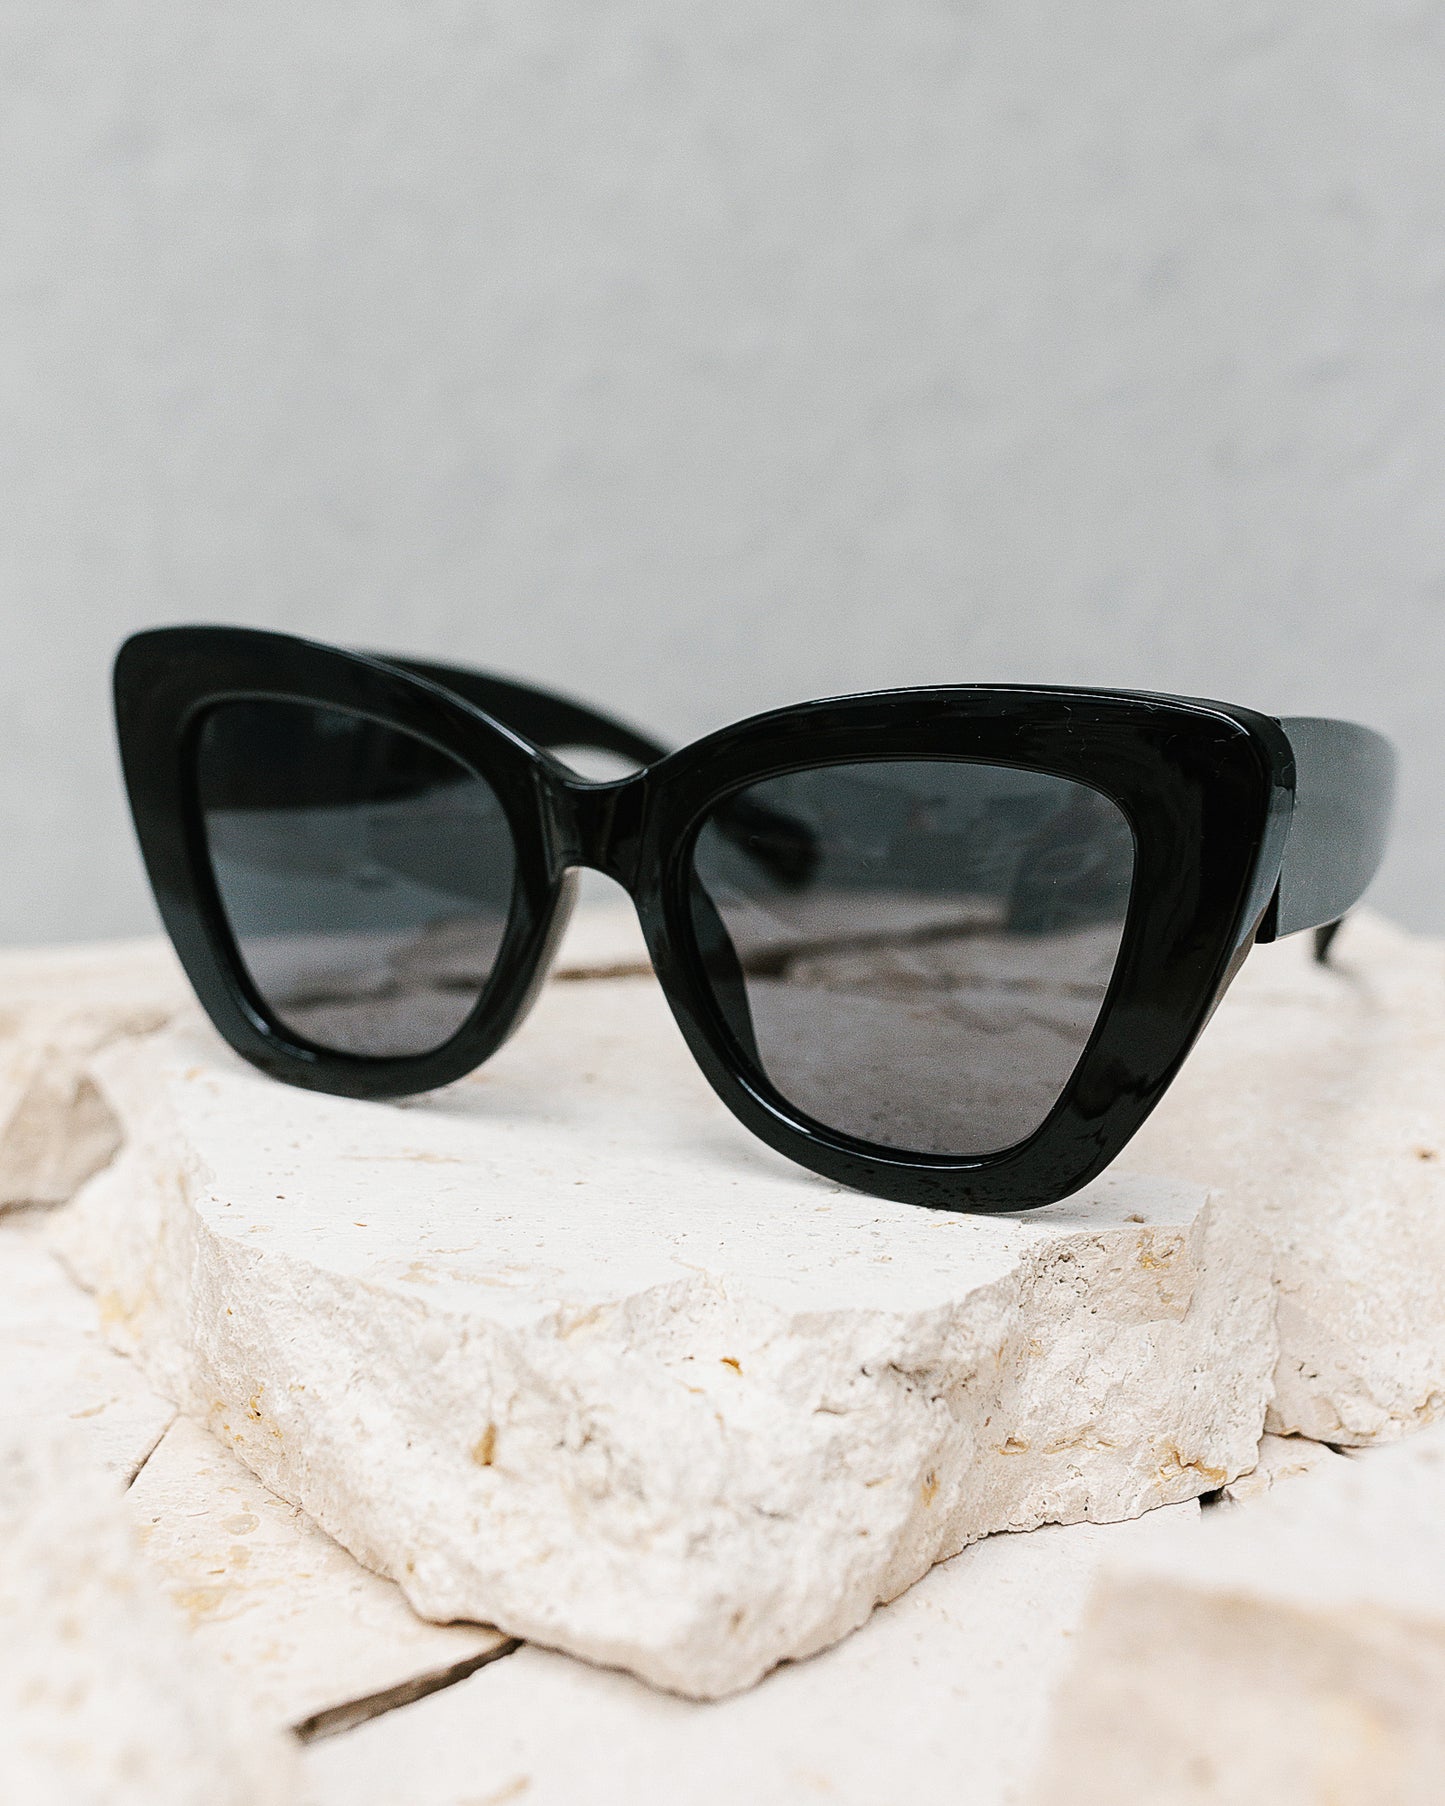 Mulholland Sunglasses - Black